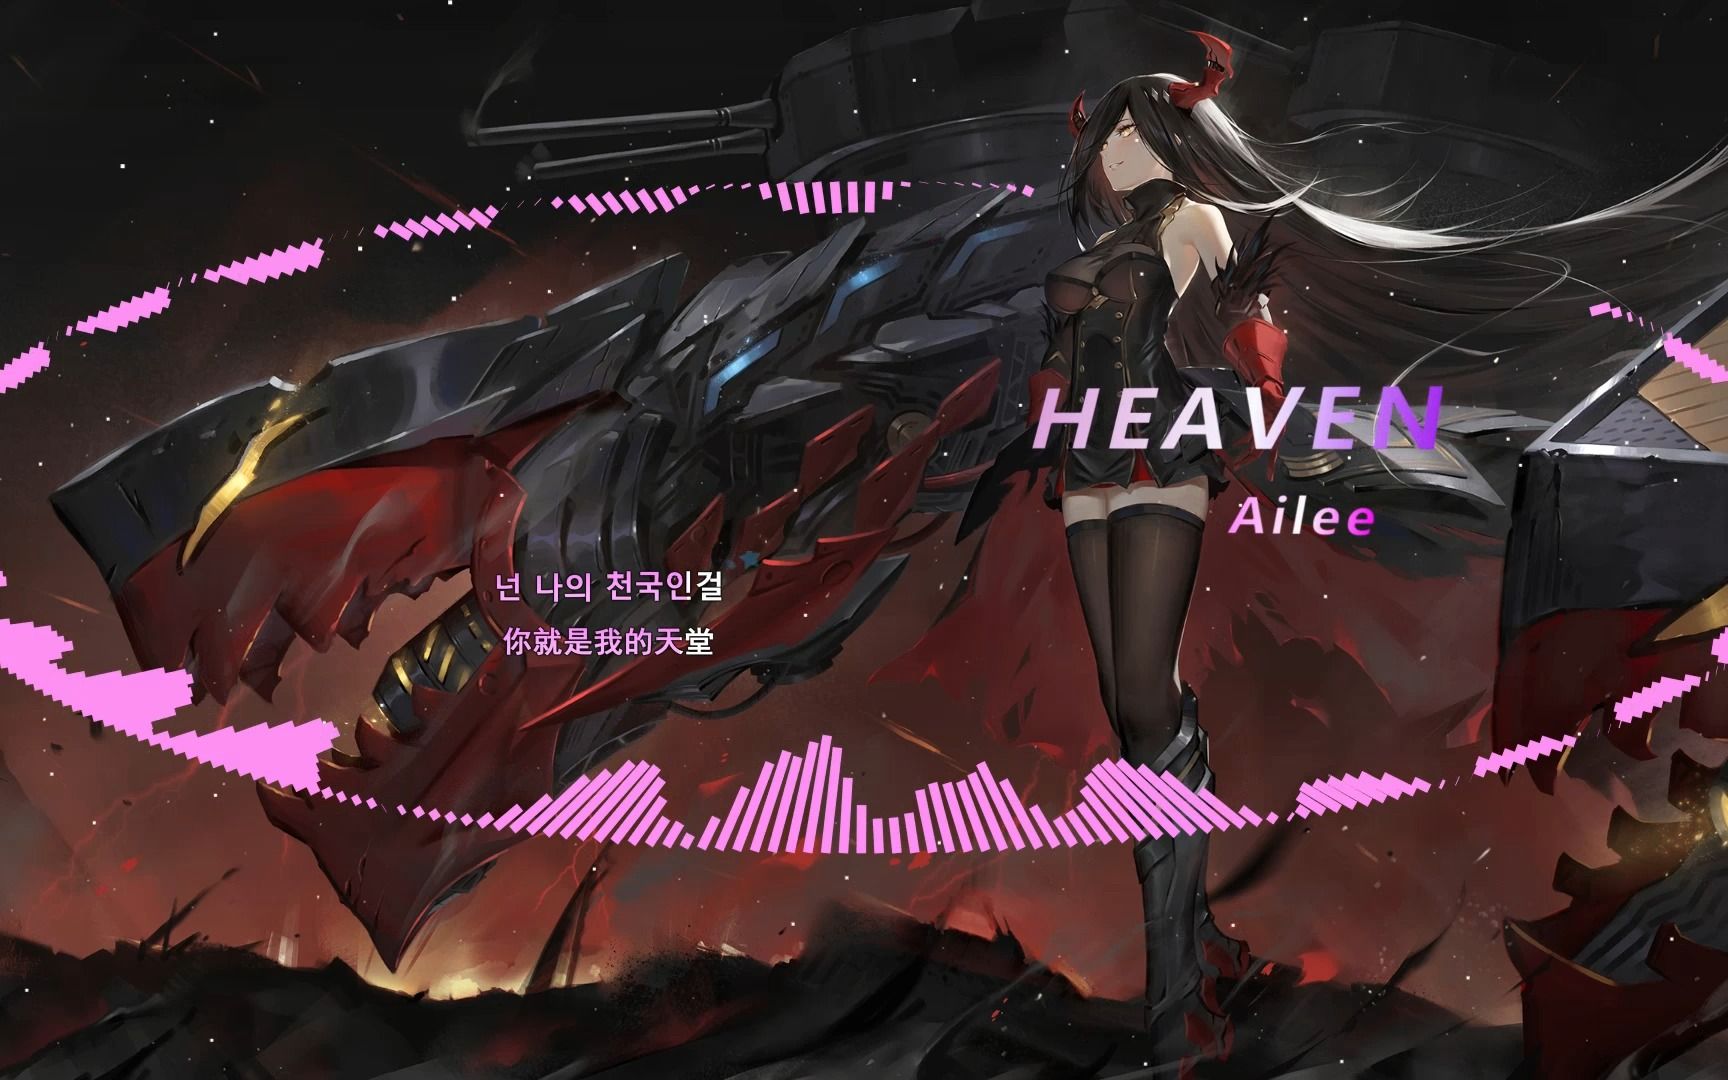 【音乐分享】Heaven-Ailee 让耳朵怀孕的一首宝藏歌曲